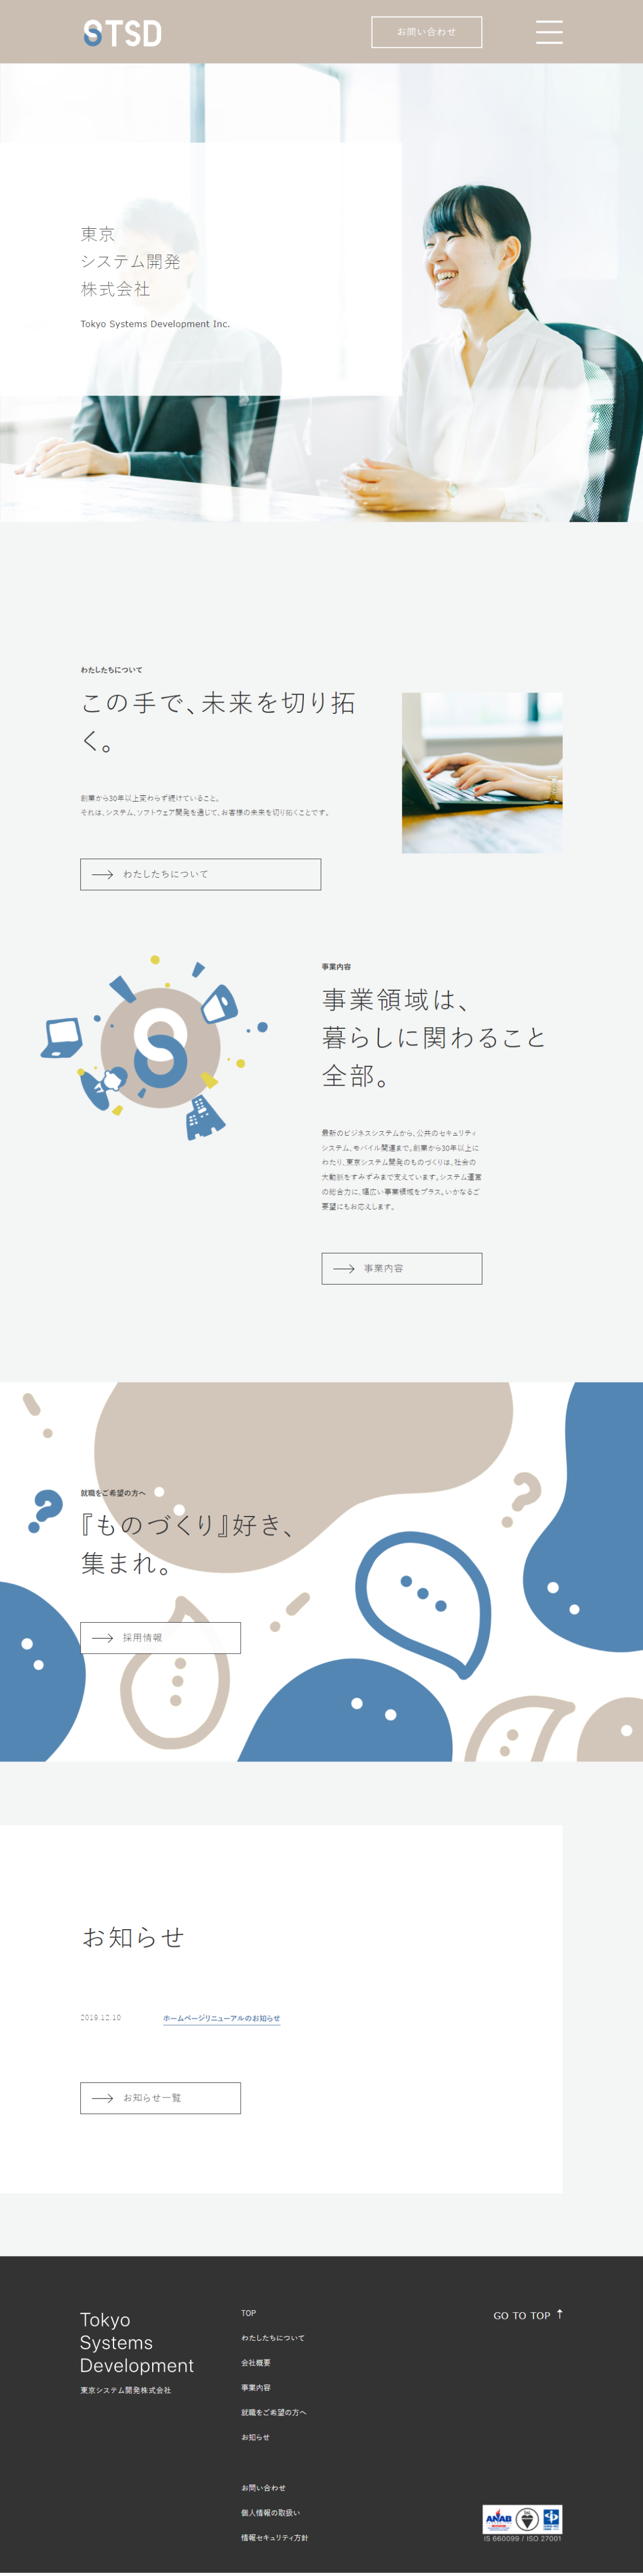 IT・AI・情報通信 コーポレートサイト制作 WEBデザイン参考ギャラリー 東京システム開発株式会社